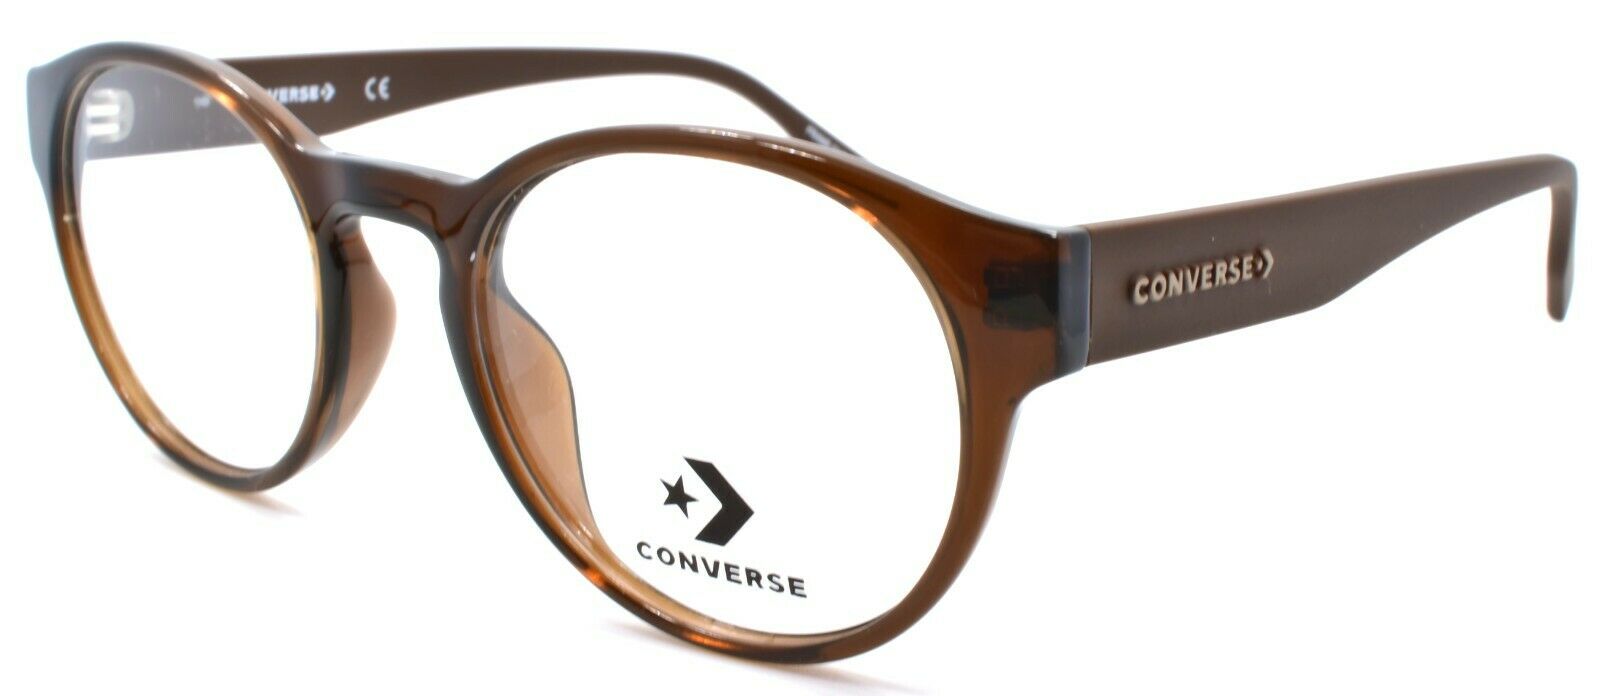 1-CONVERSE CV5018 201 Men's Eyeglasses Frames Round 49-20-145 Crystal Dark Root-886895508537-IKSpecs